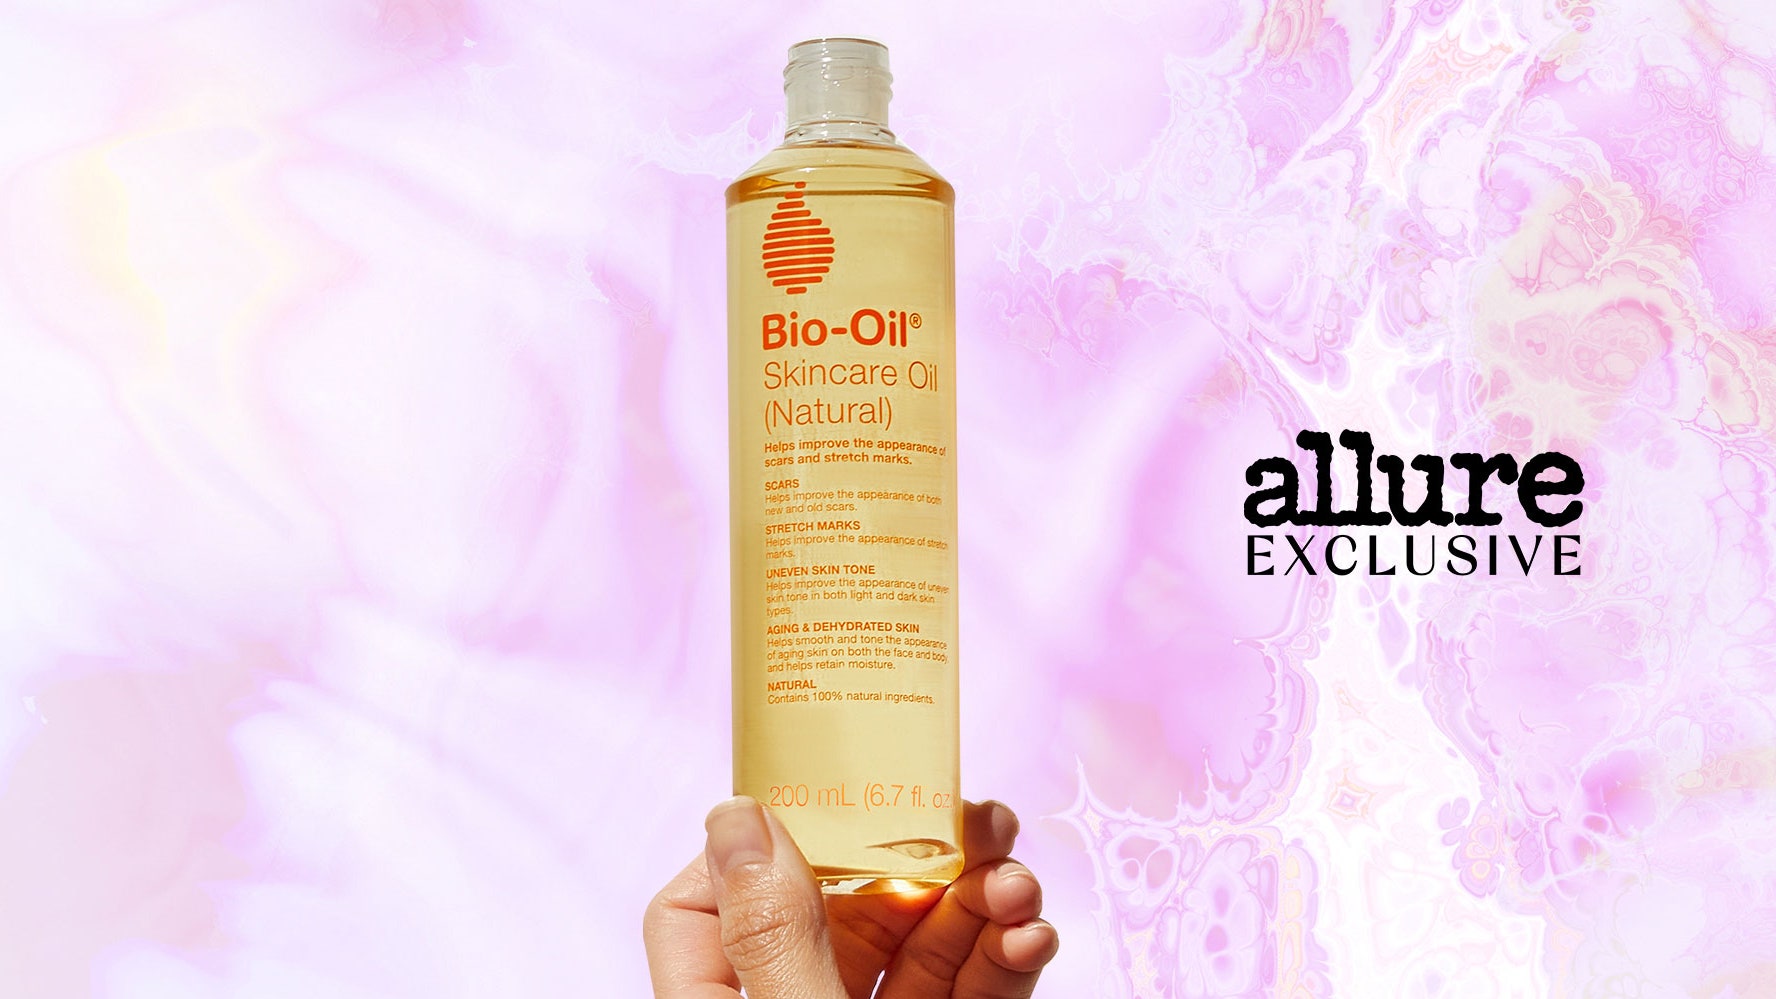 Bio-Oil acaba de lanzar una versión "natural" de su apreciado producto